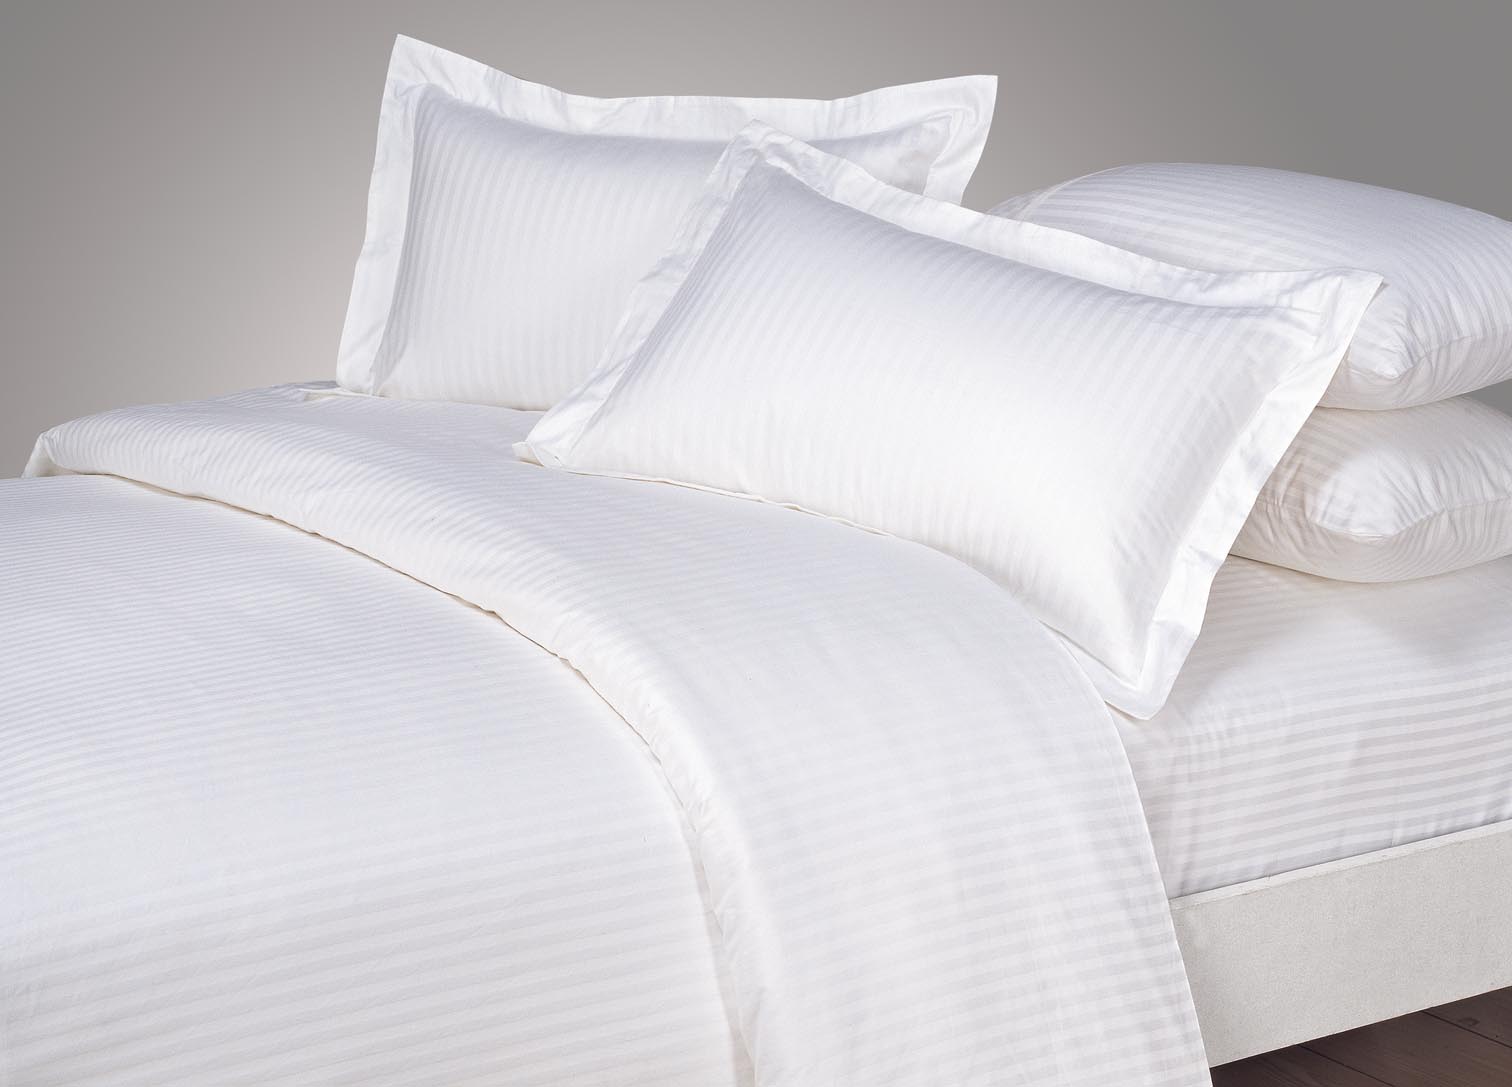 Vải cotton T250 được ưa chuộng làm chăn ga gối cho khách sạn từ 2 đến 3 sao